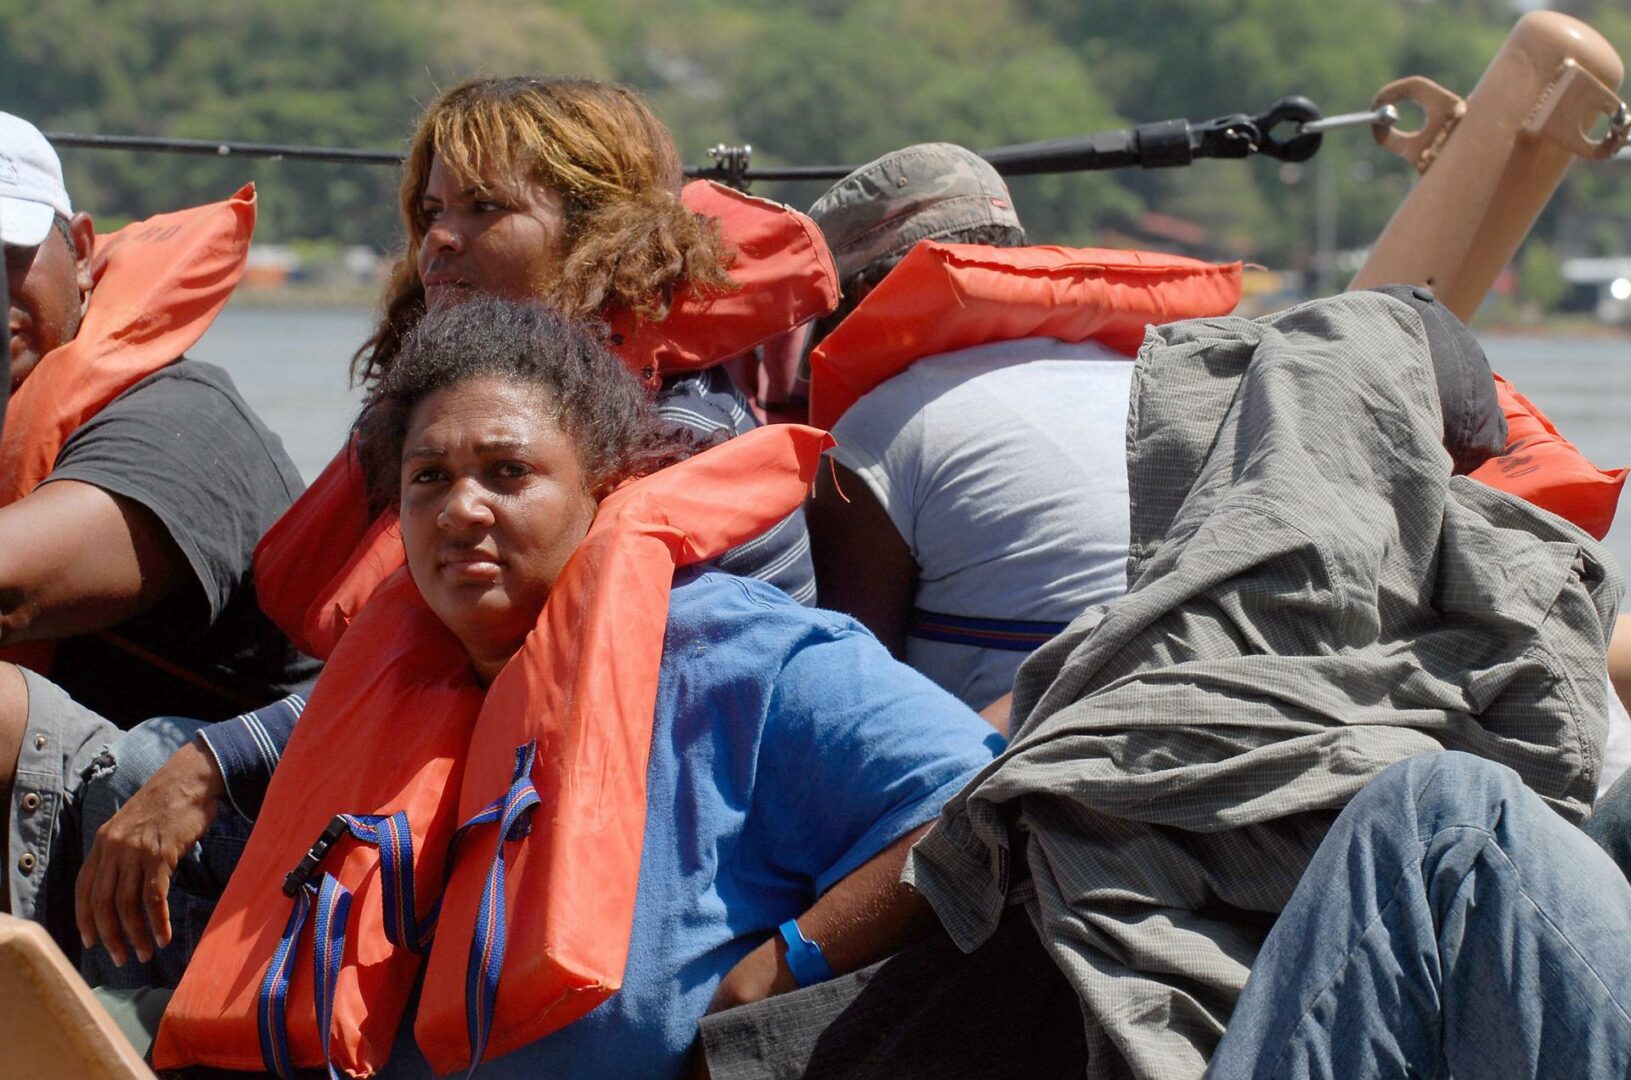 Repatrían a 20 migrantes dominicanos tras intento de entrar ilegal a Puerto Rico